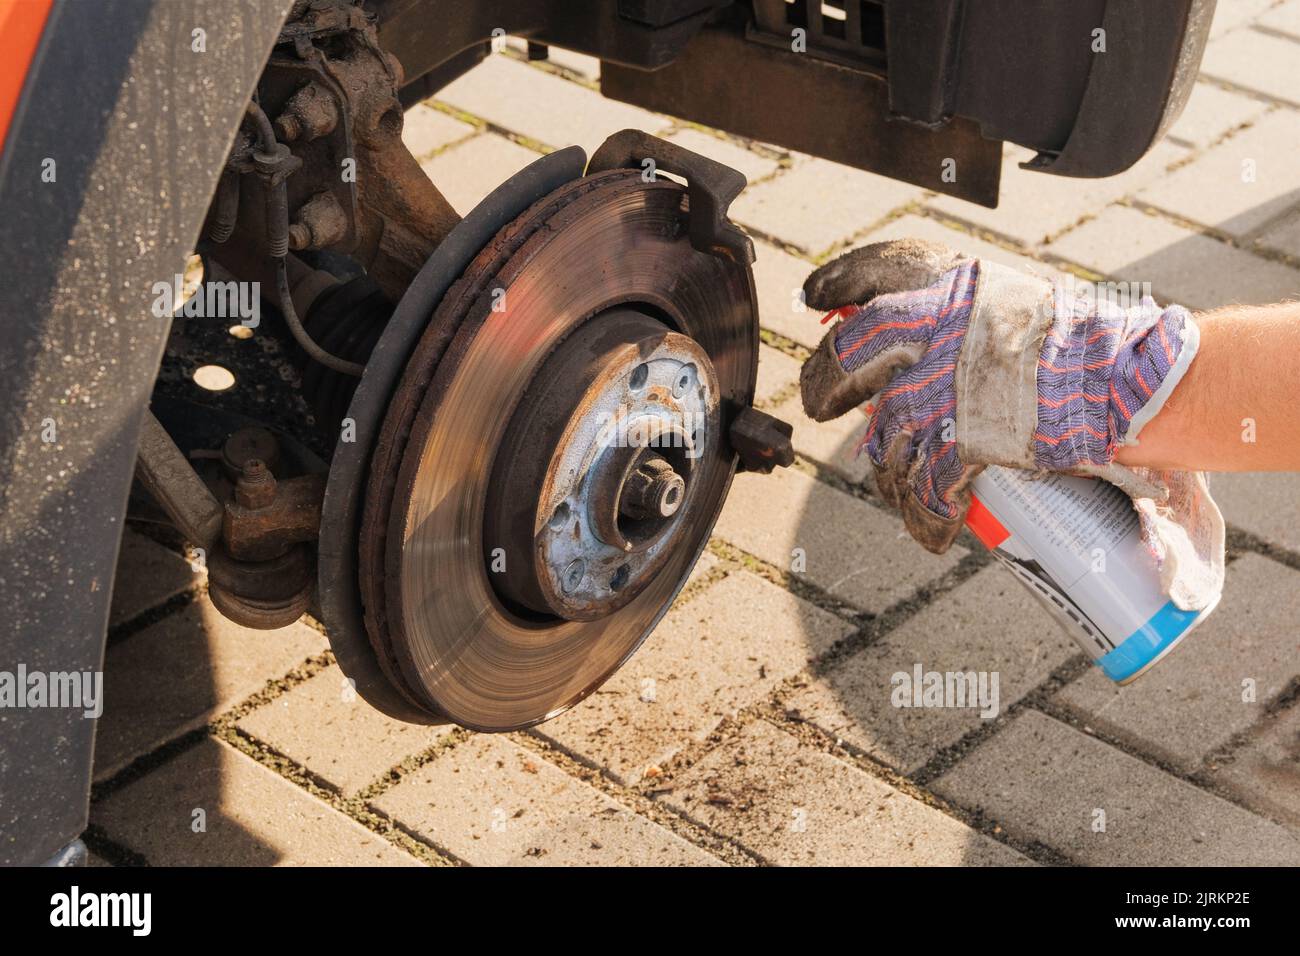 Car repair concept. Repair of a wheel on a passenger car. Wheel balancing or repair. Stock Photo